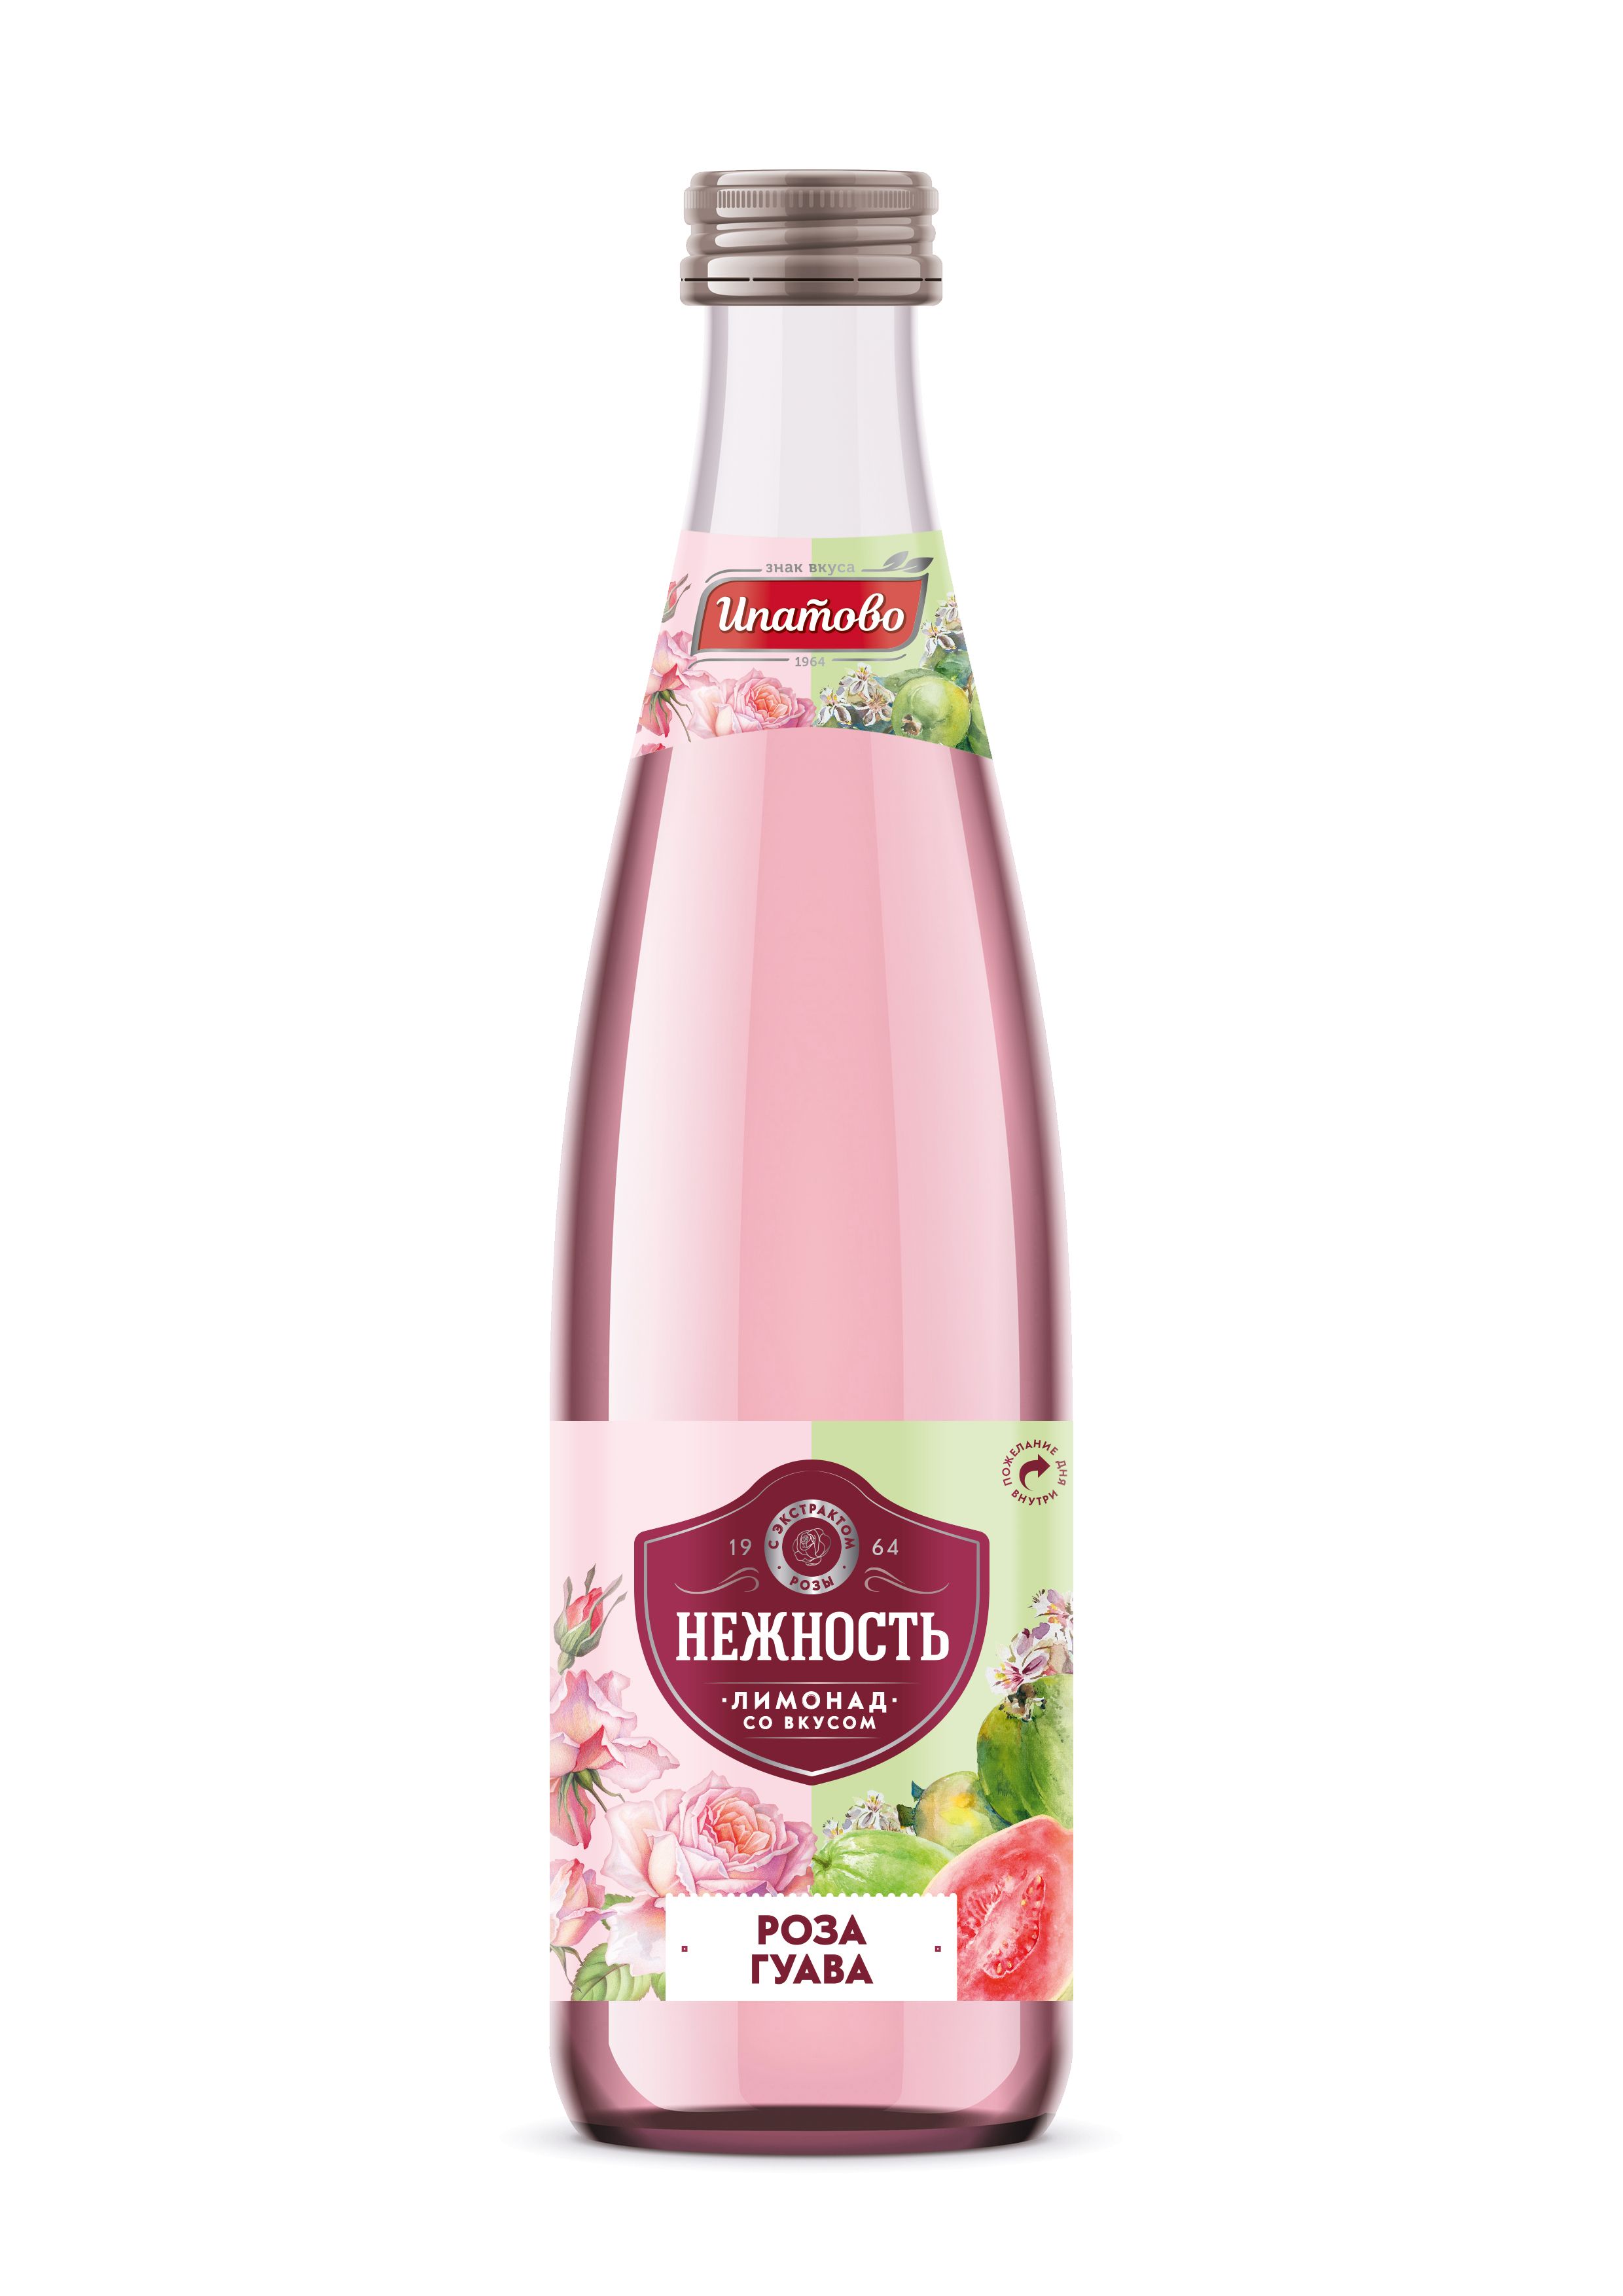 Газированный напиток Ипатово Лимонад нежность роза-гуава 500 мл купить для  Бизнеса и офиса по оптовой цене с доставкой в СберМаркет Бизнес